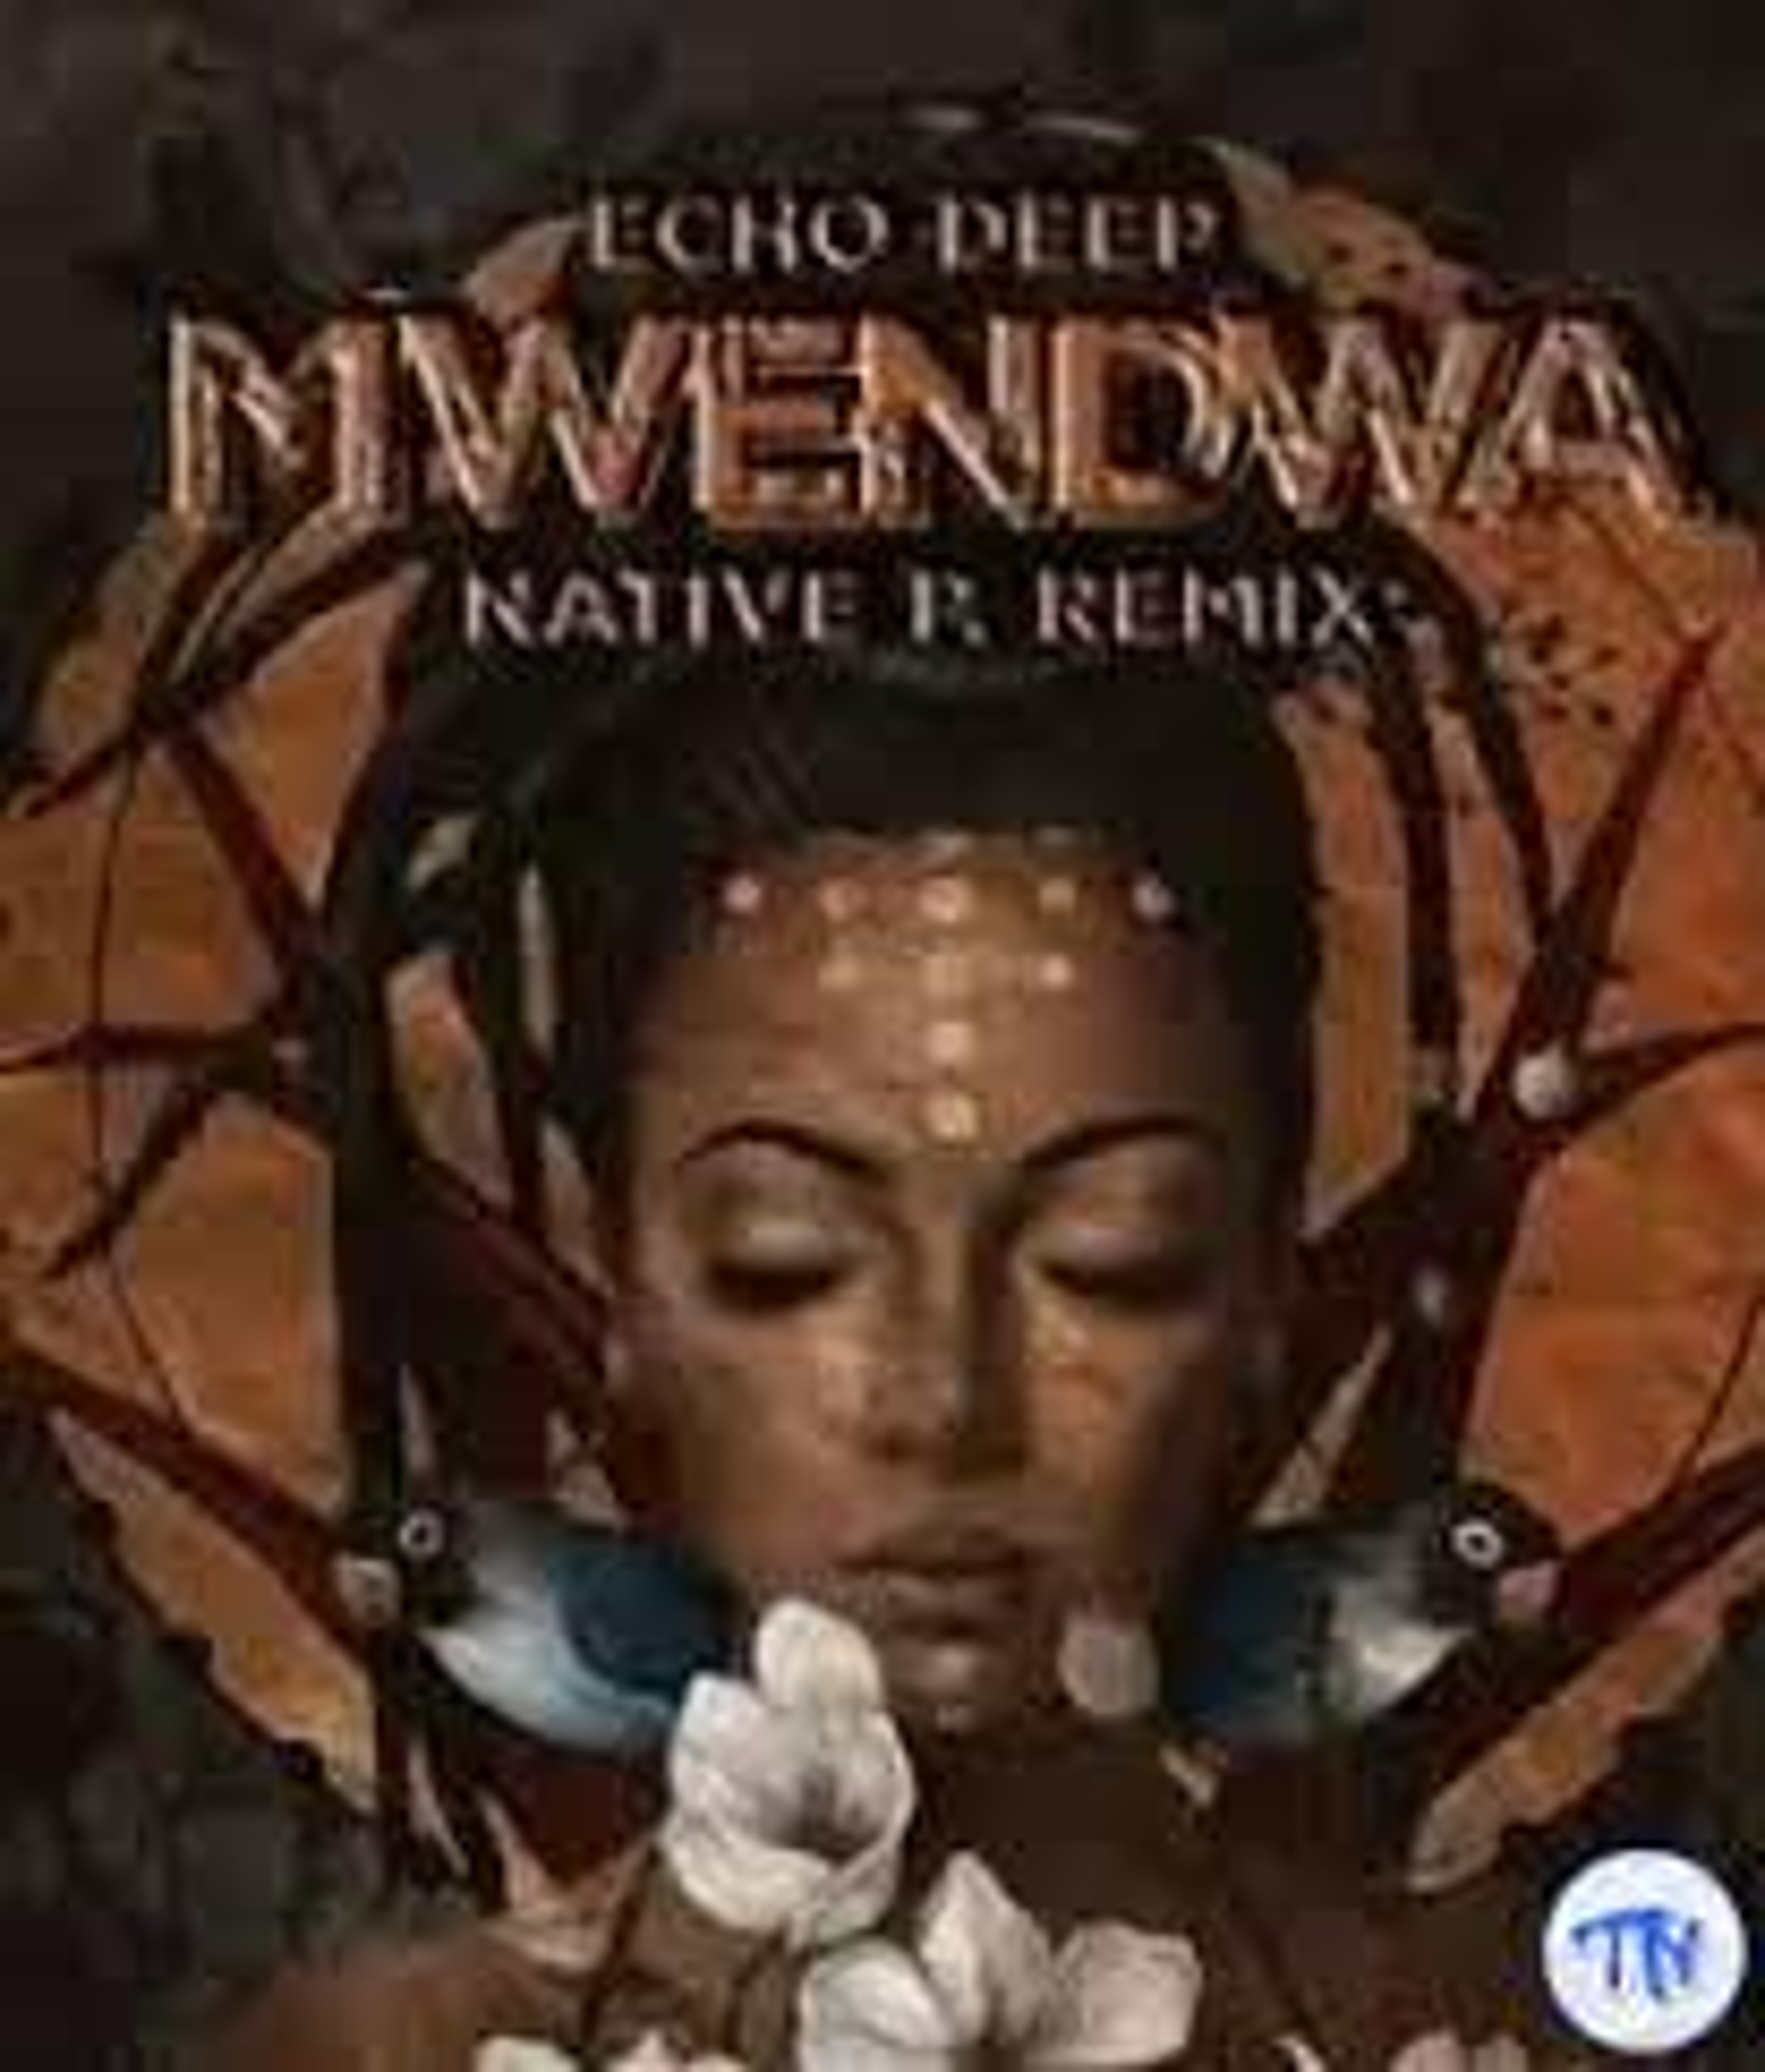 Echo Deep – Mwendwa Native P. Remix Mp3 Download Fakaza: